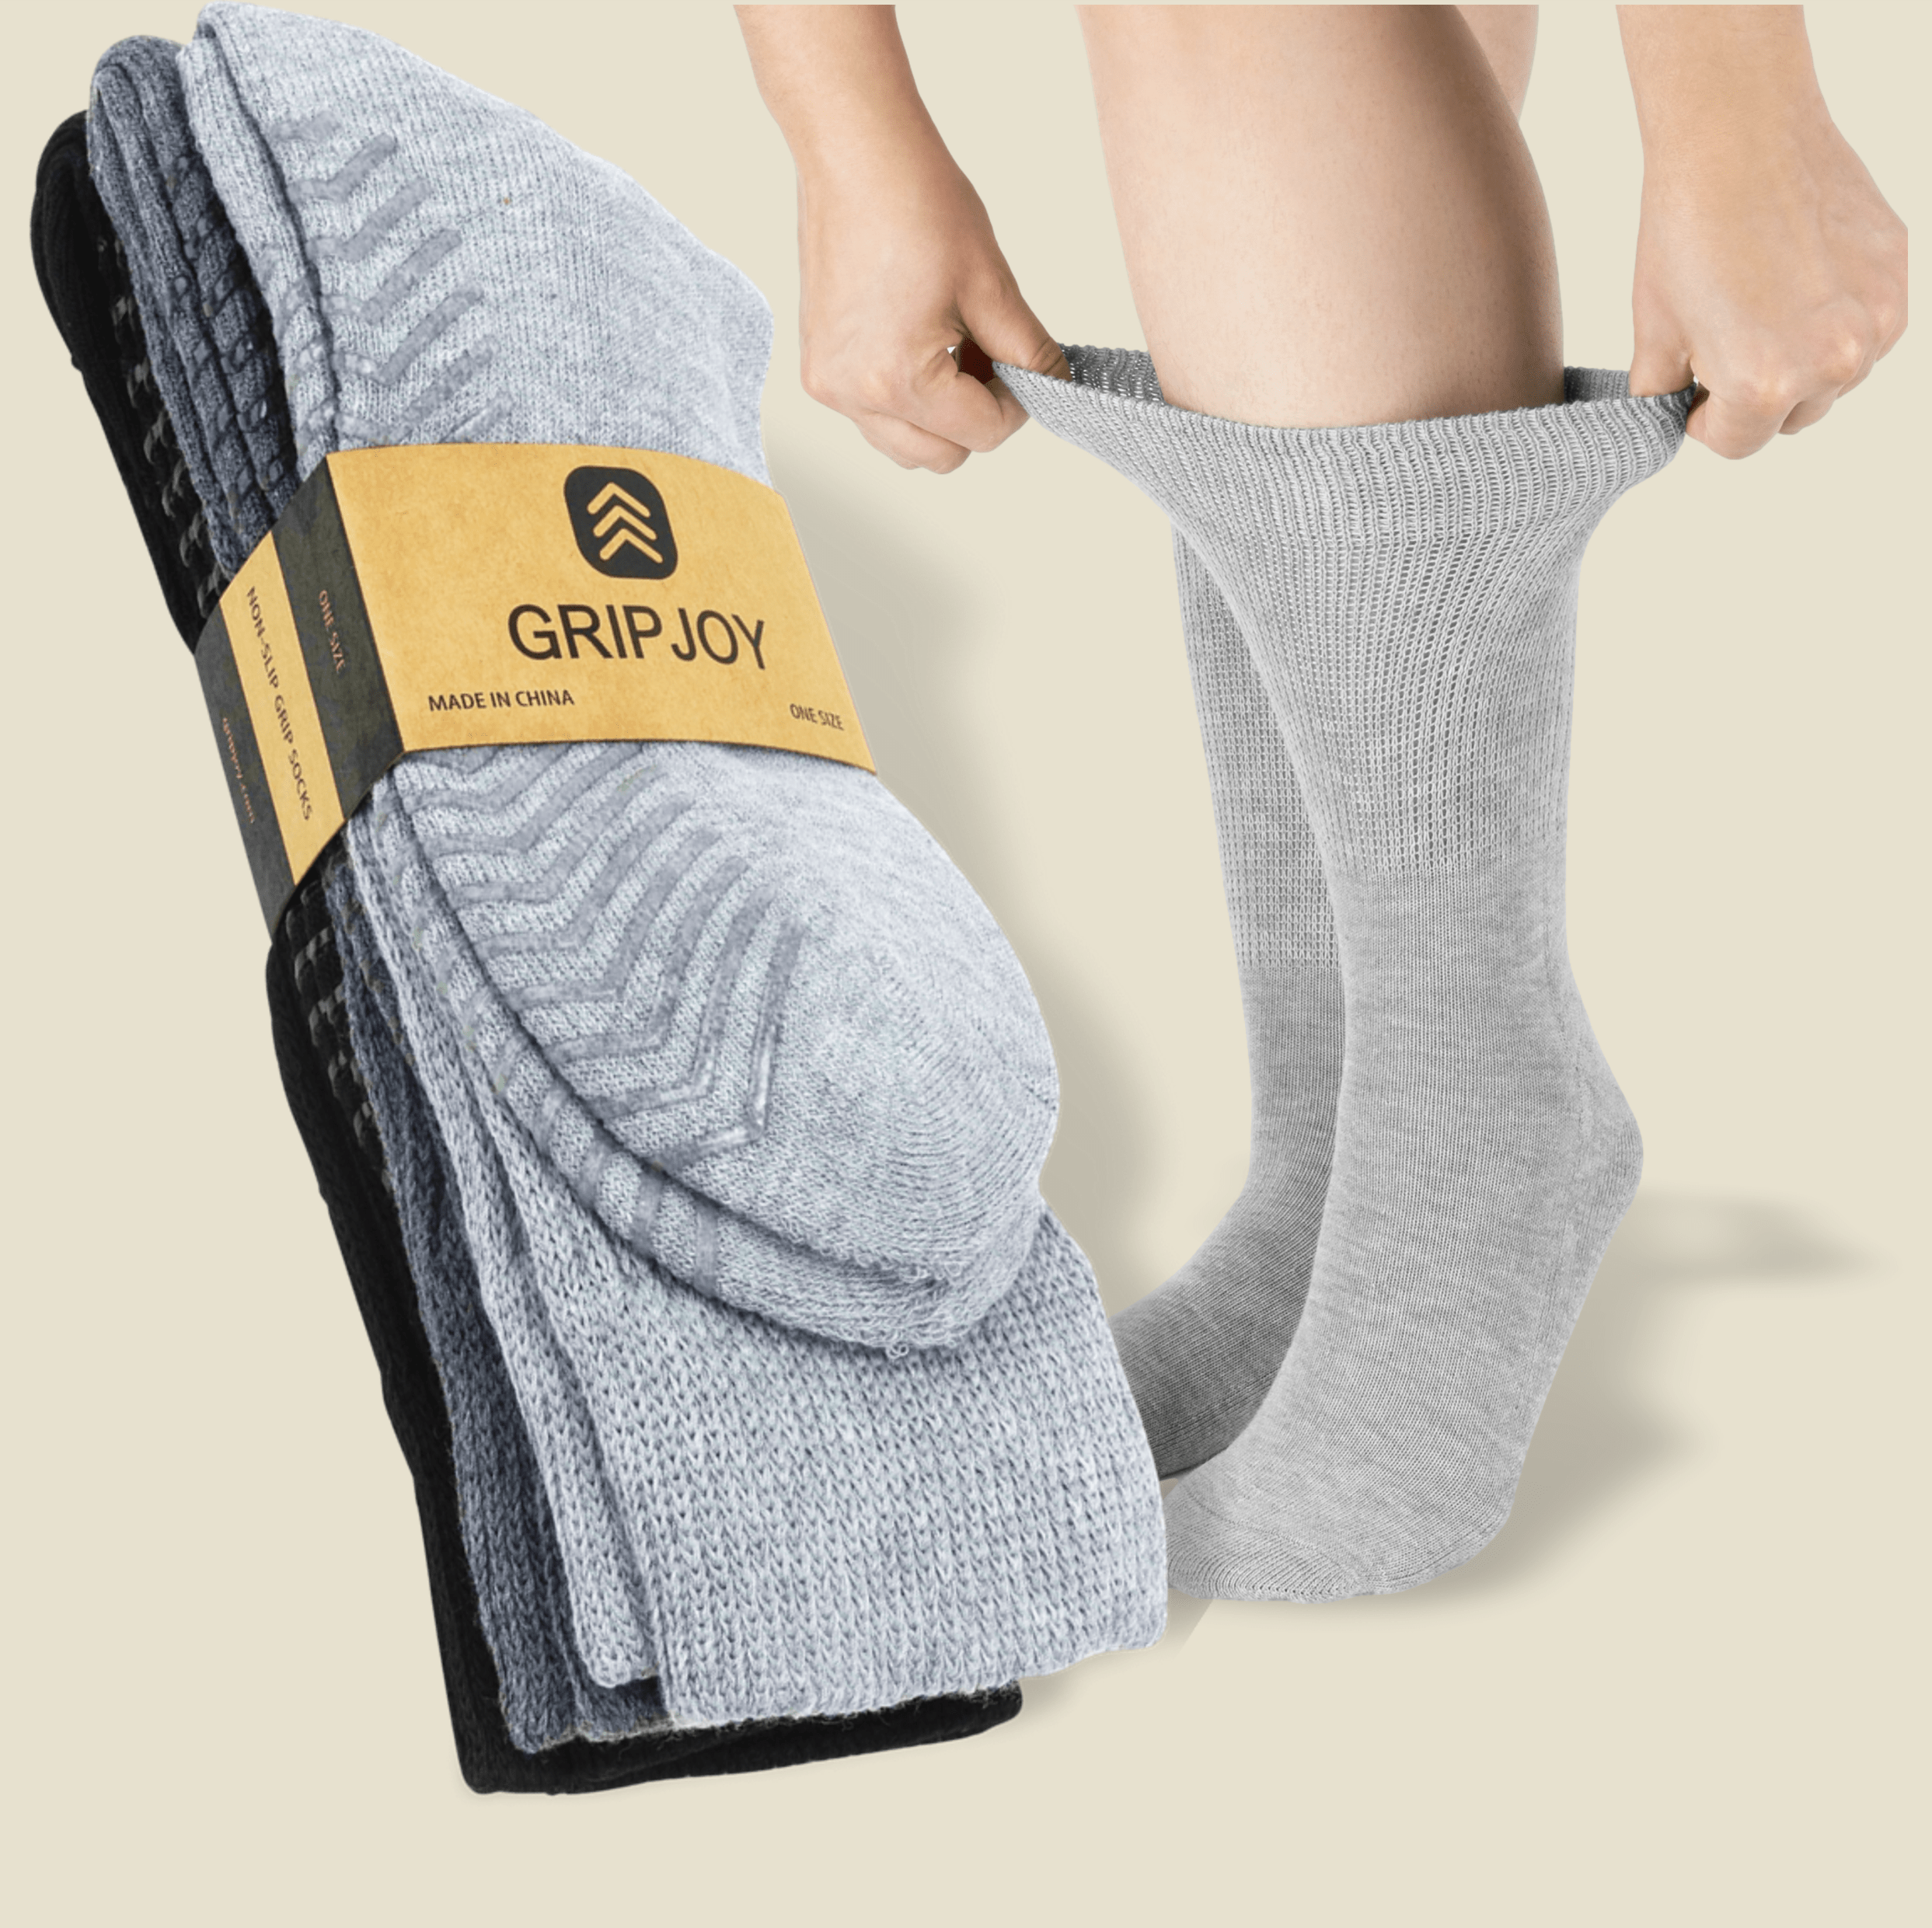 Men's Black/Grey Diabetic Socks with Grippers x3 Pairs, Gripjoy Socks